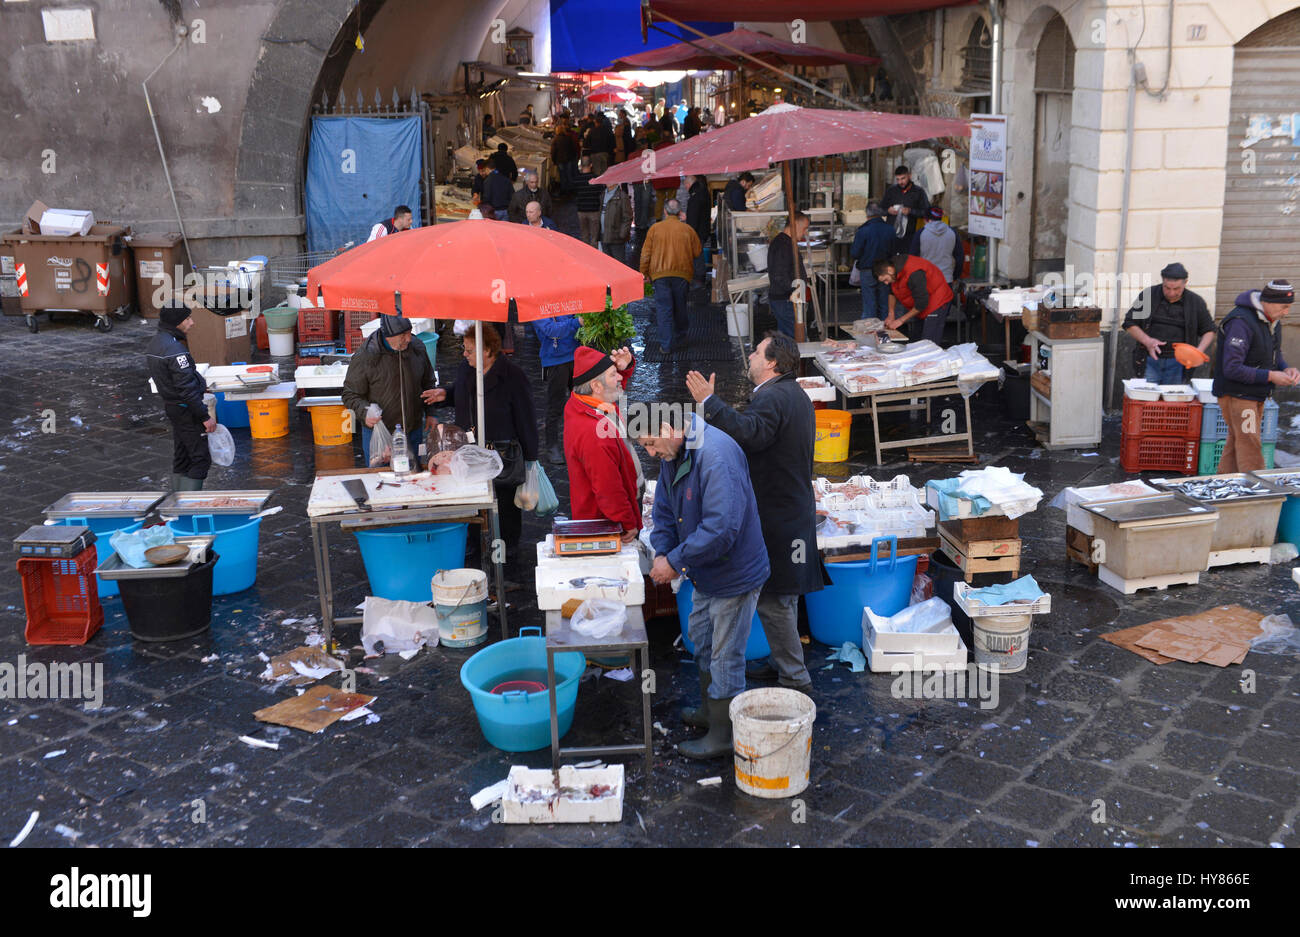 Fish market, Piazza Alonzo di Benedetto, Catania, Sicily, Italy, Fischmarkt, Sizilien, Italien Stock Photo